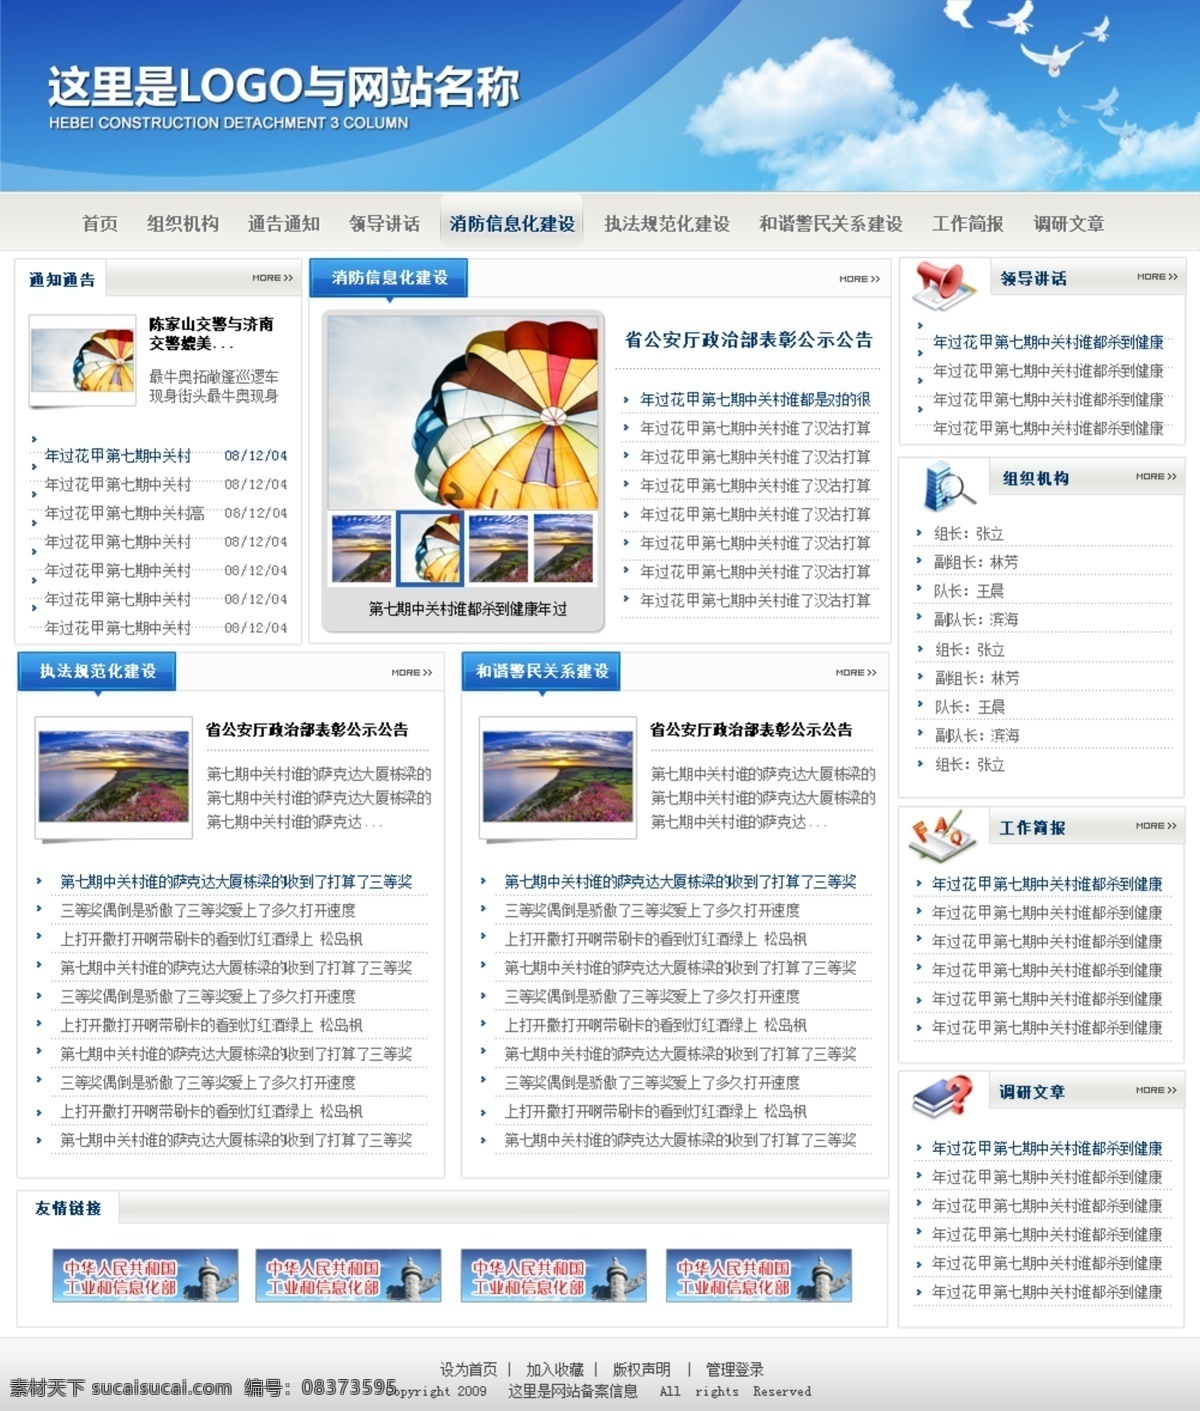 政府网站模板 政府网站 模板下载 企业网站 红色专题 网站 红色网站 政府 web 界面设计 中文模板